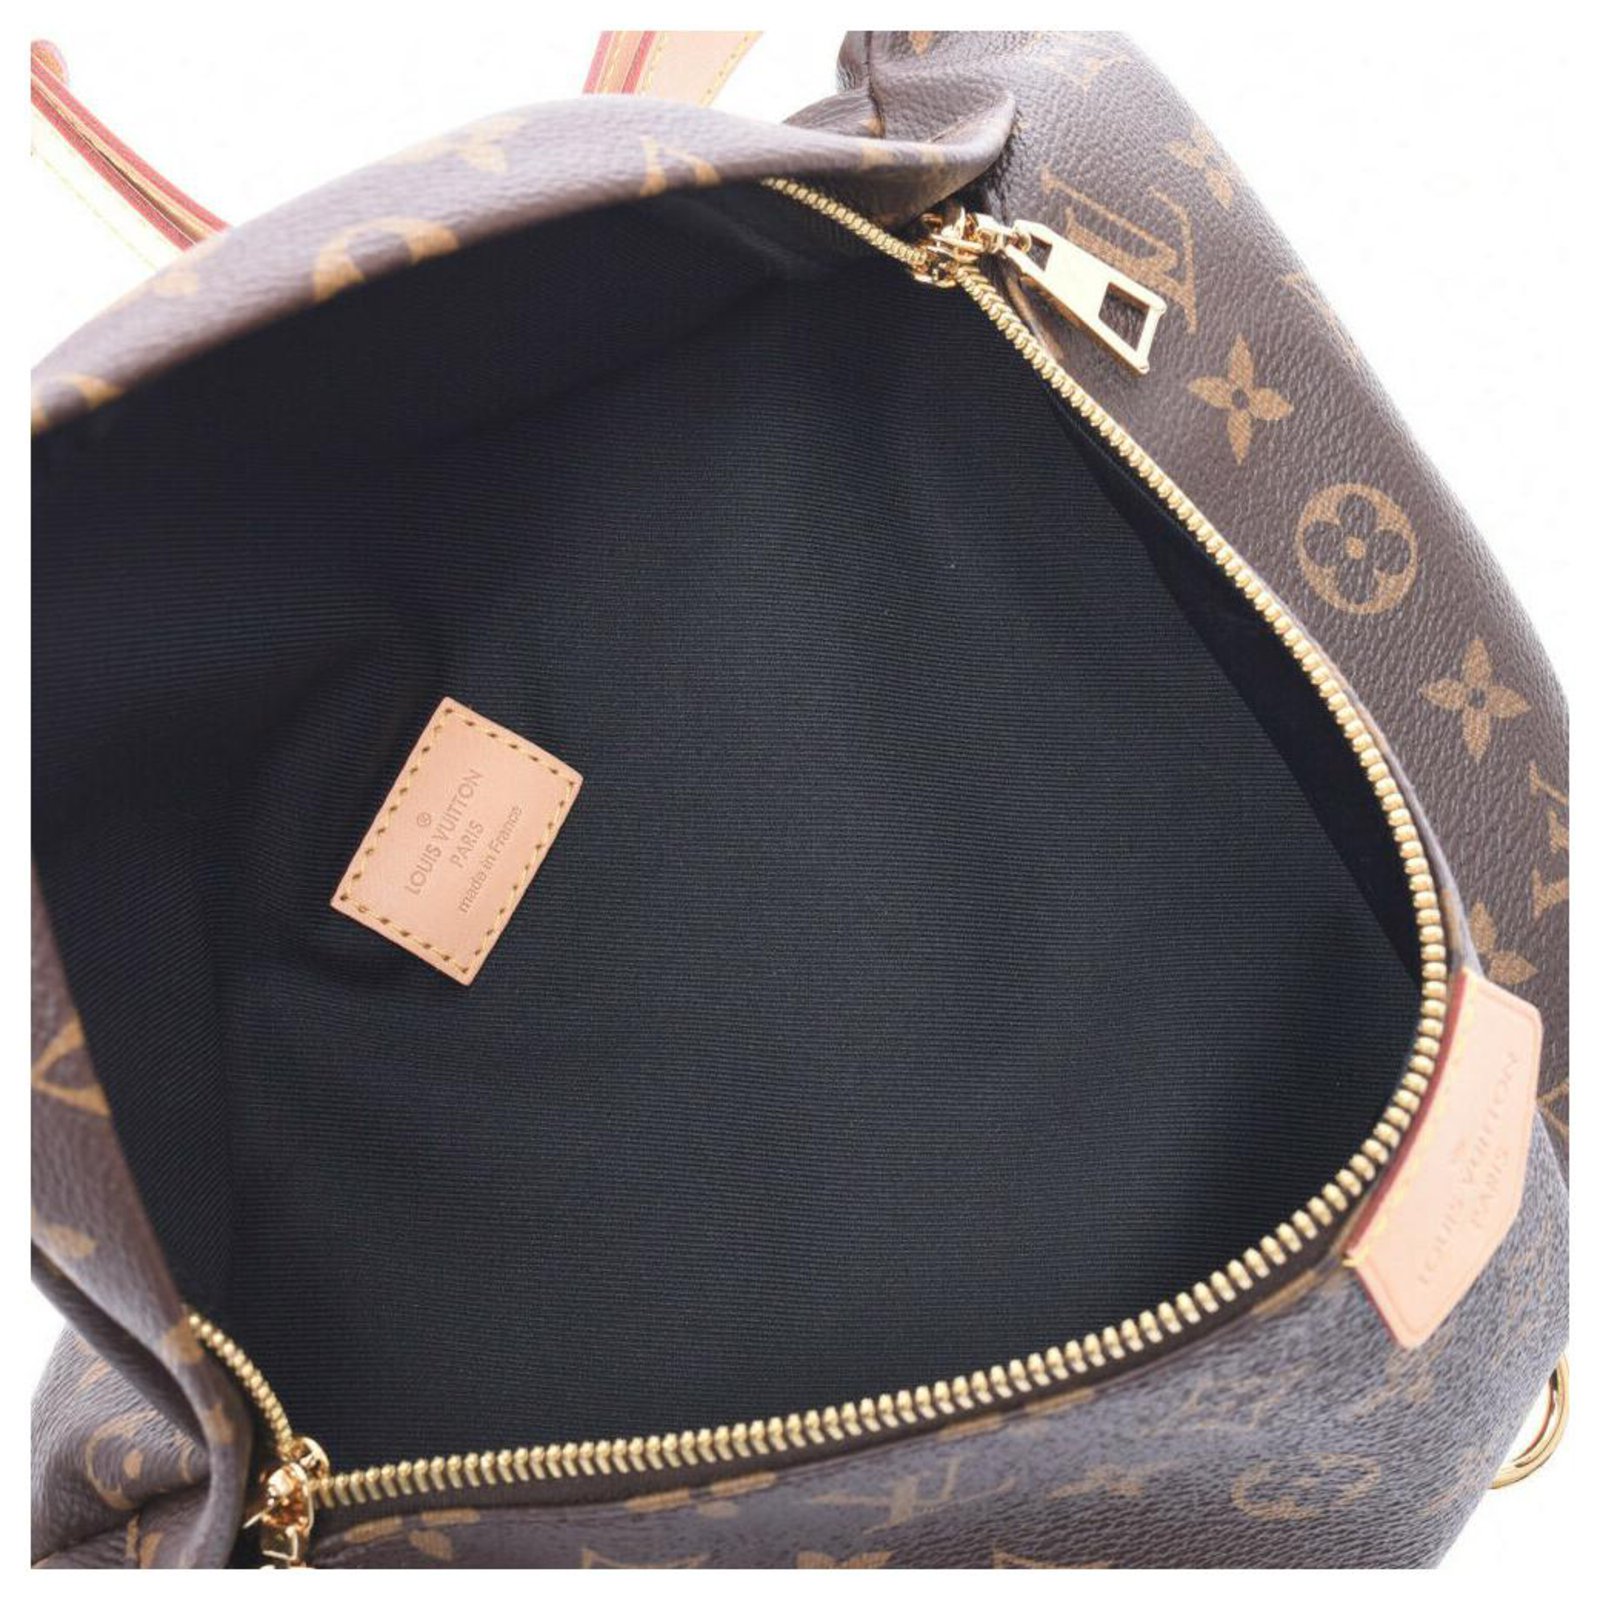 Bum bag / sac ceinture cloth bag Louis Vuitton Brown in Cloth - 34633504